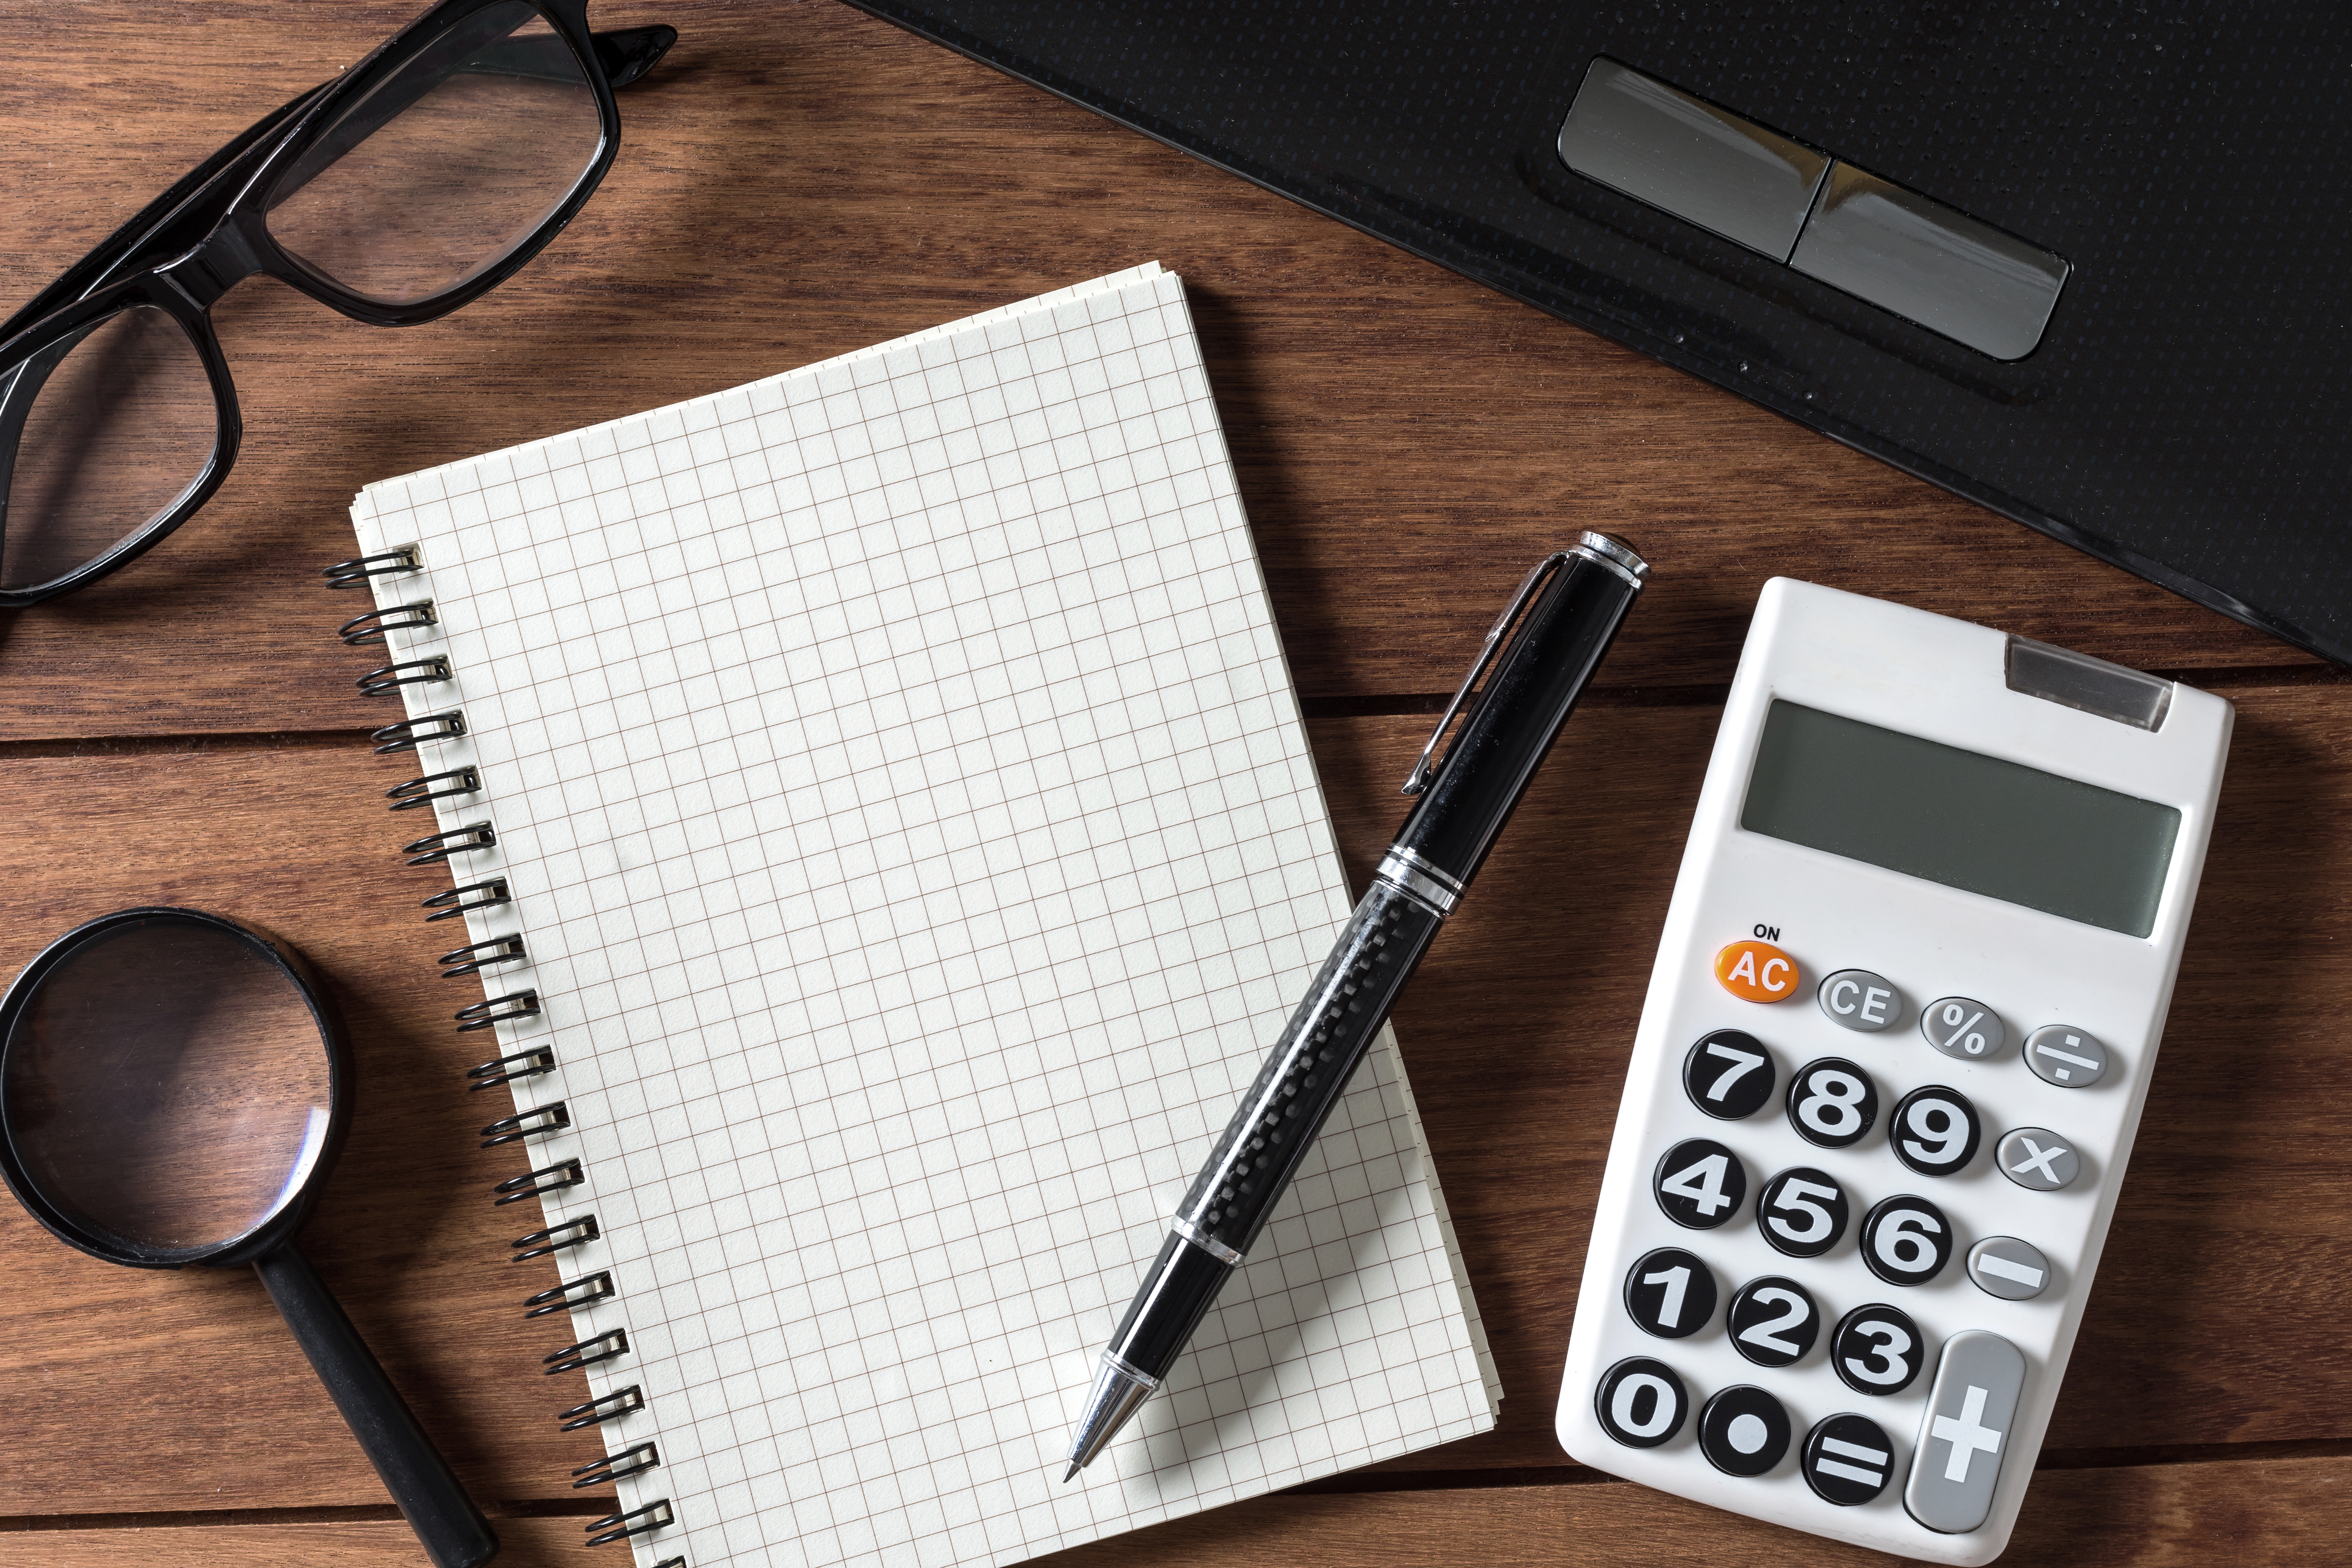 Imagem mostra uma calculadora e um caderno sobre uma mesa de madeira